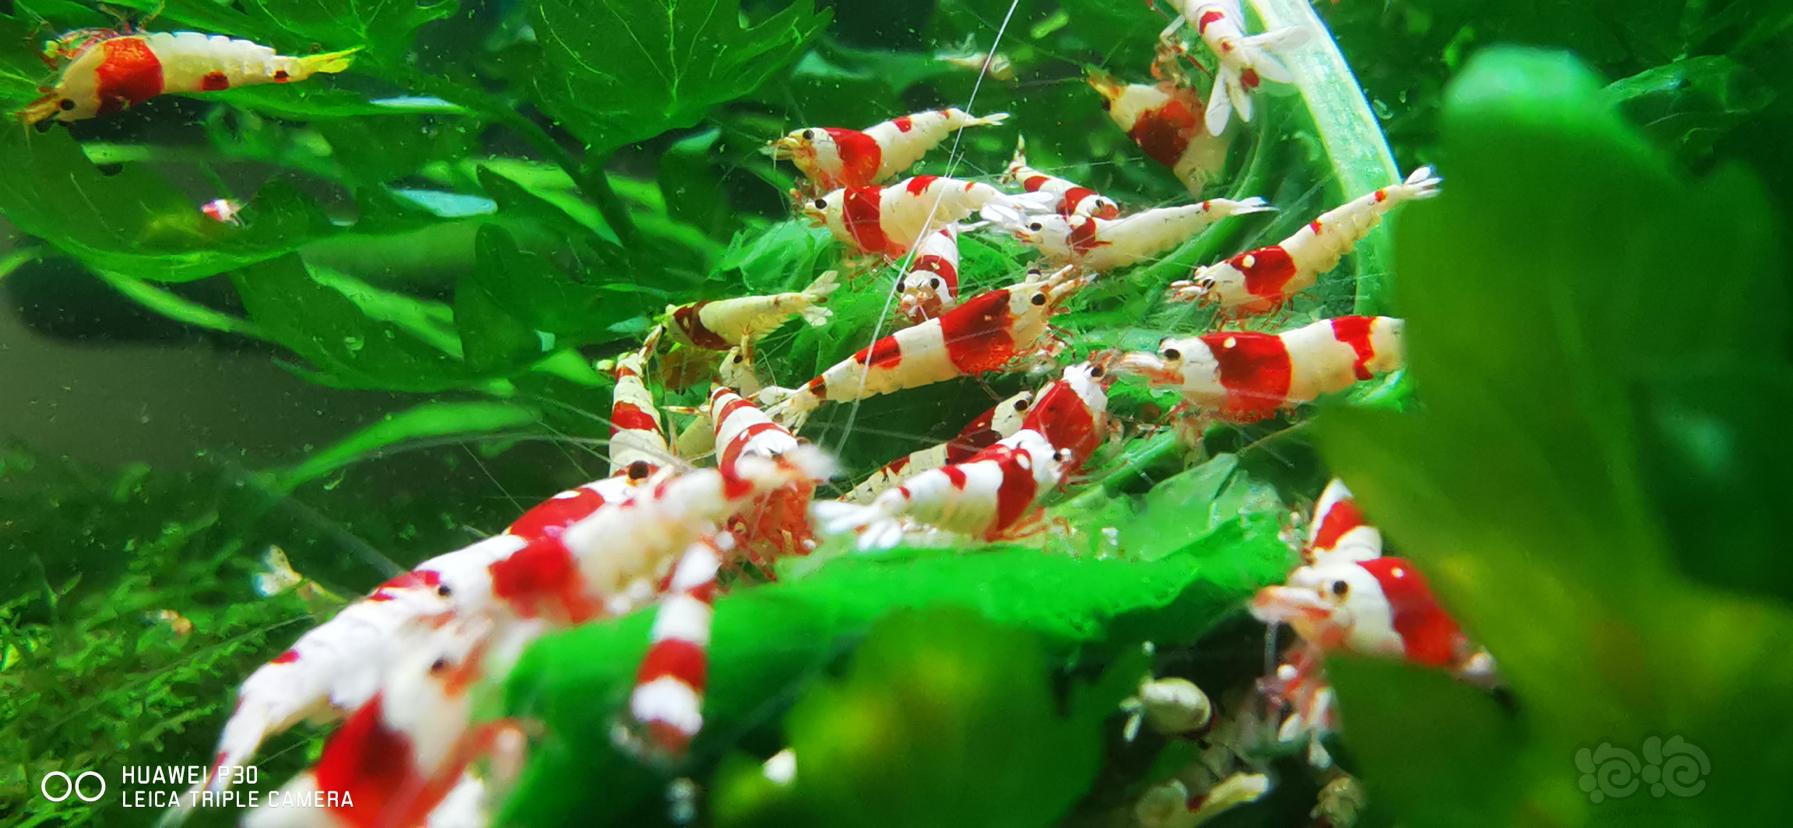 乌鲁木齐出红白水晶虾-图1